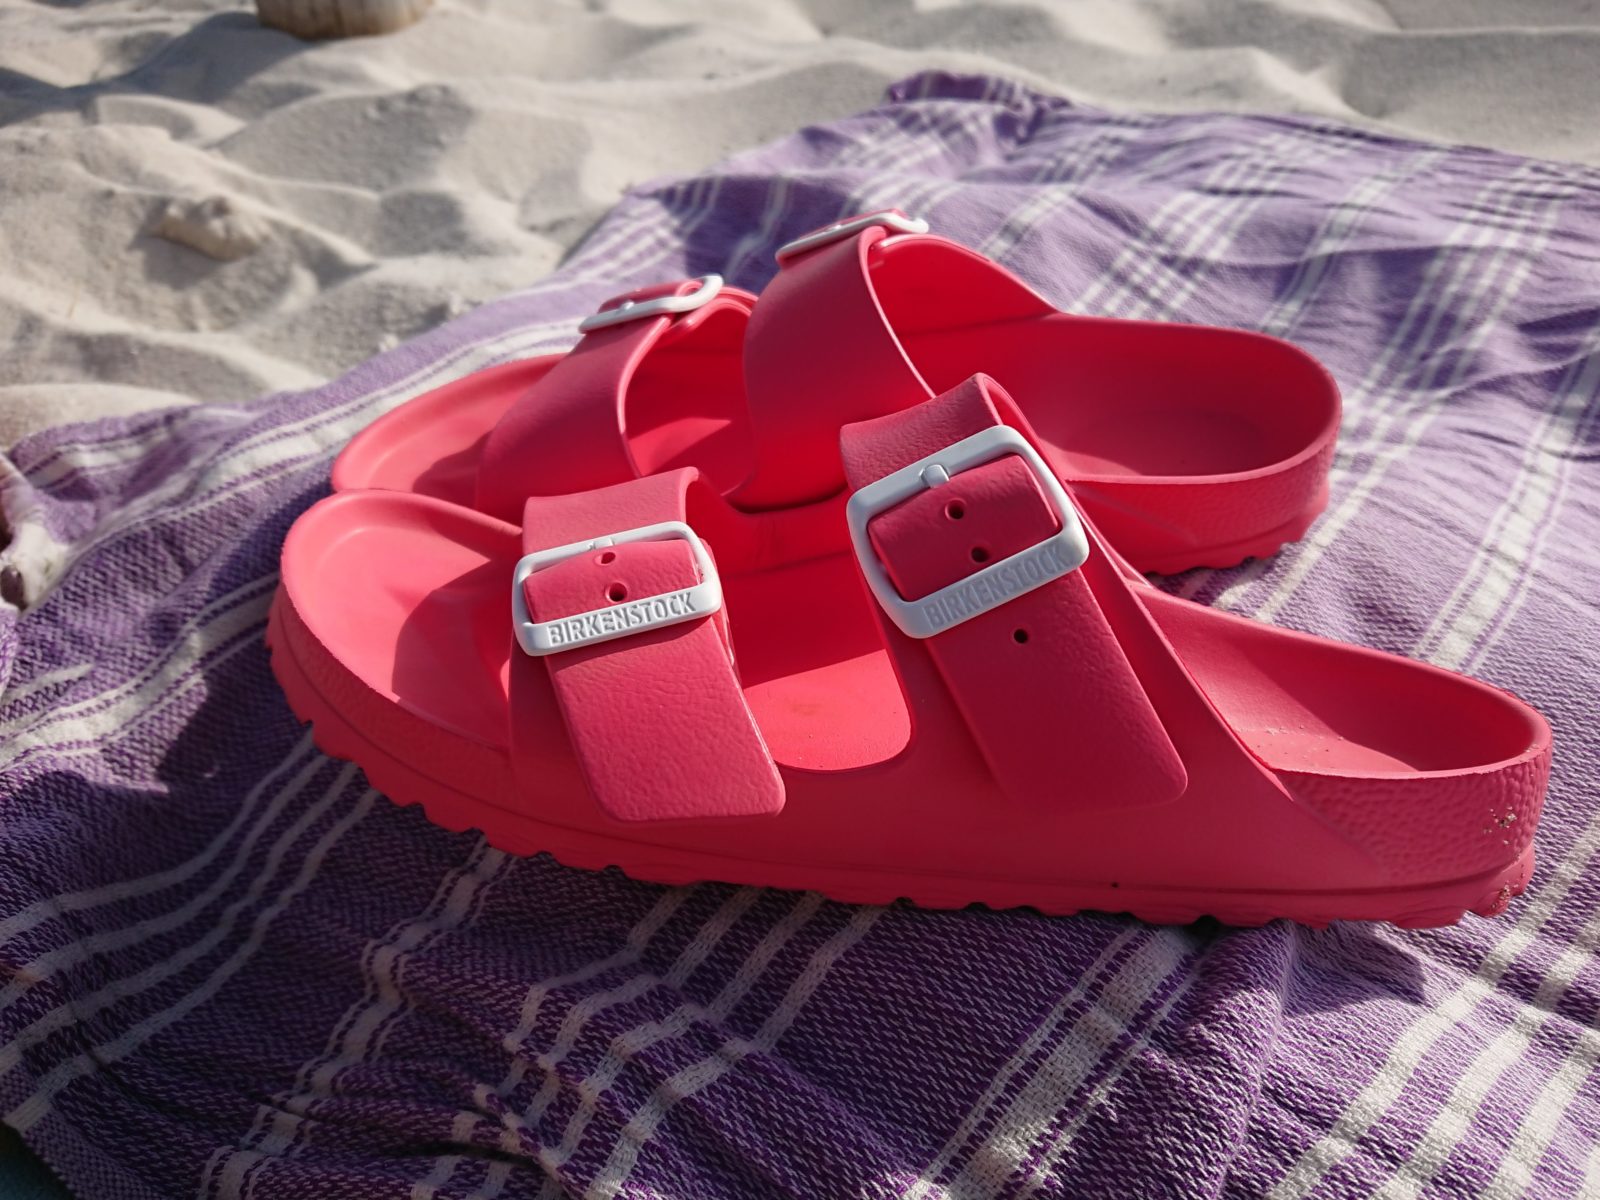 birkenstock beach sandals